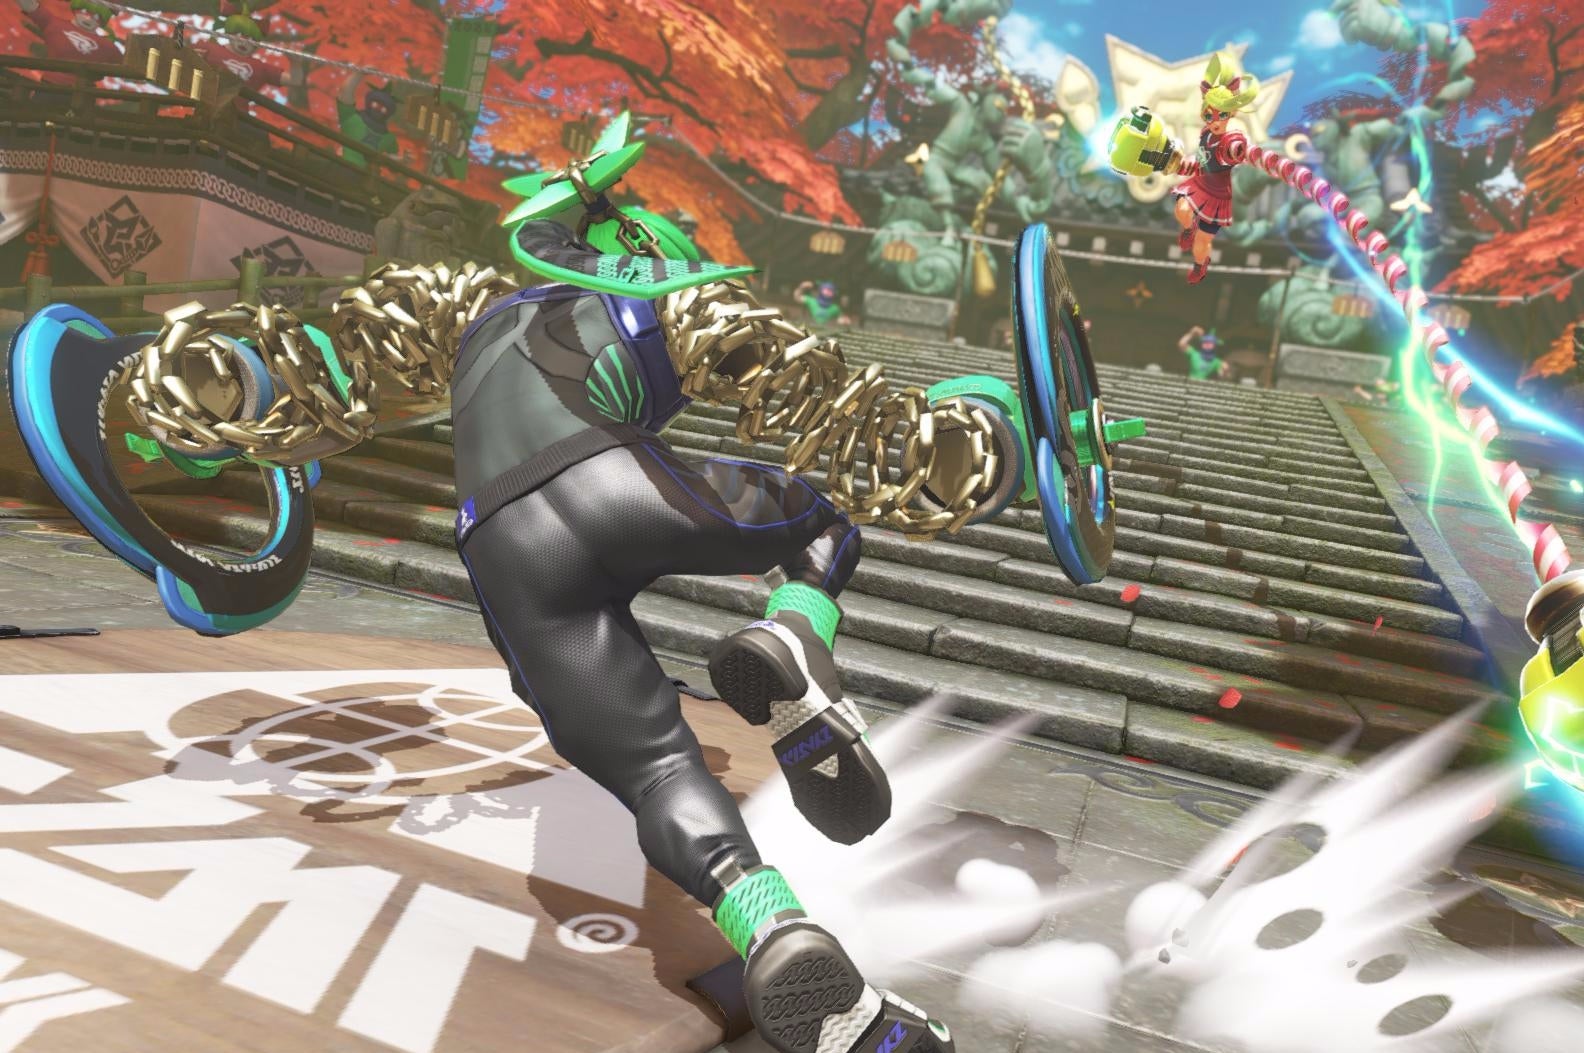 Immagine di ARMS: Nintendo ci stuzzica con questo teaser di un nuovo lottatore